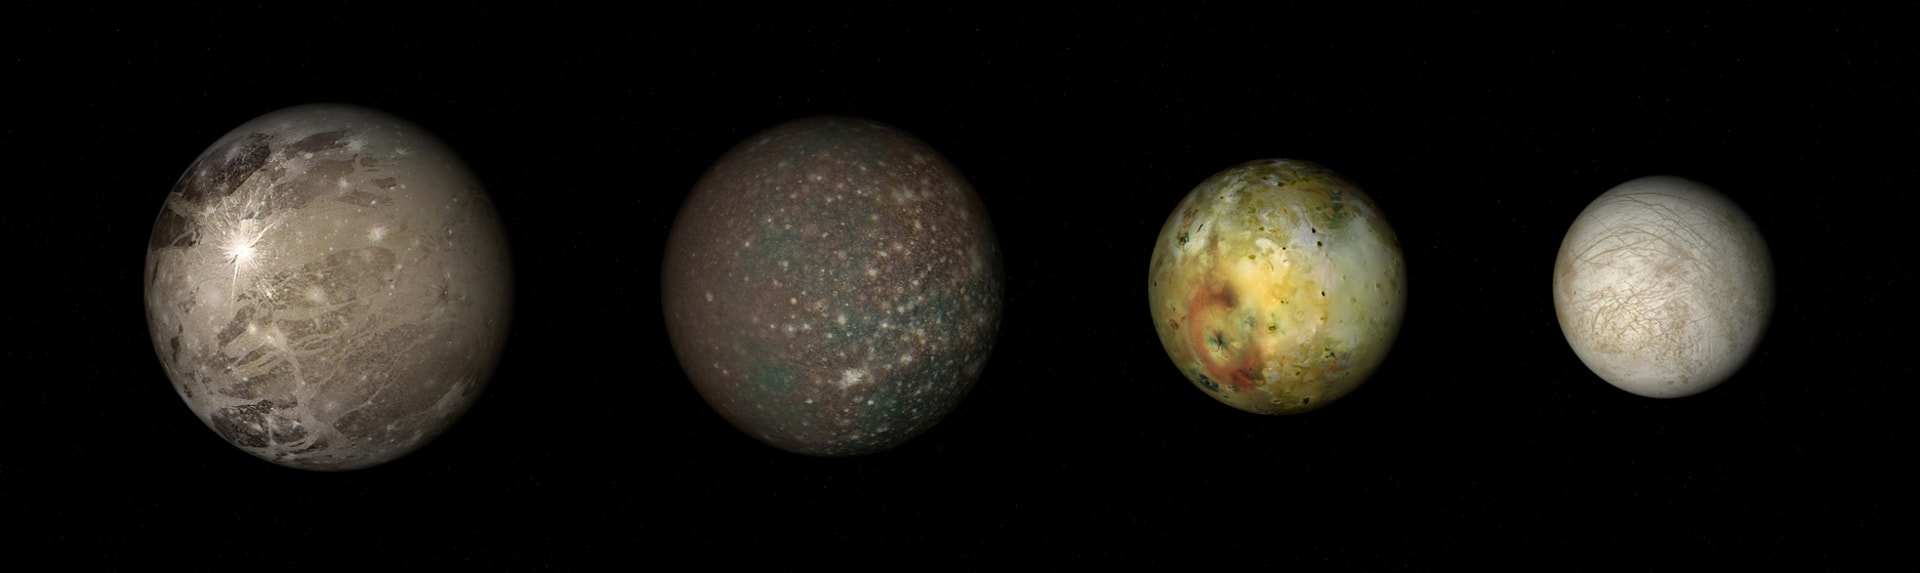 Jupiterovy ledové měsíce, zleva Ganymed, Callisto, Ió a Europa